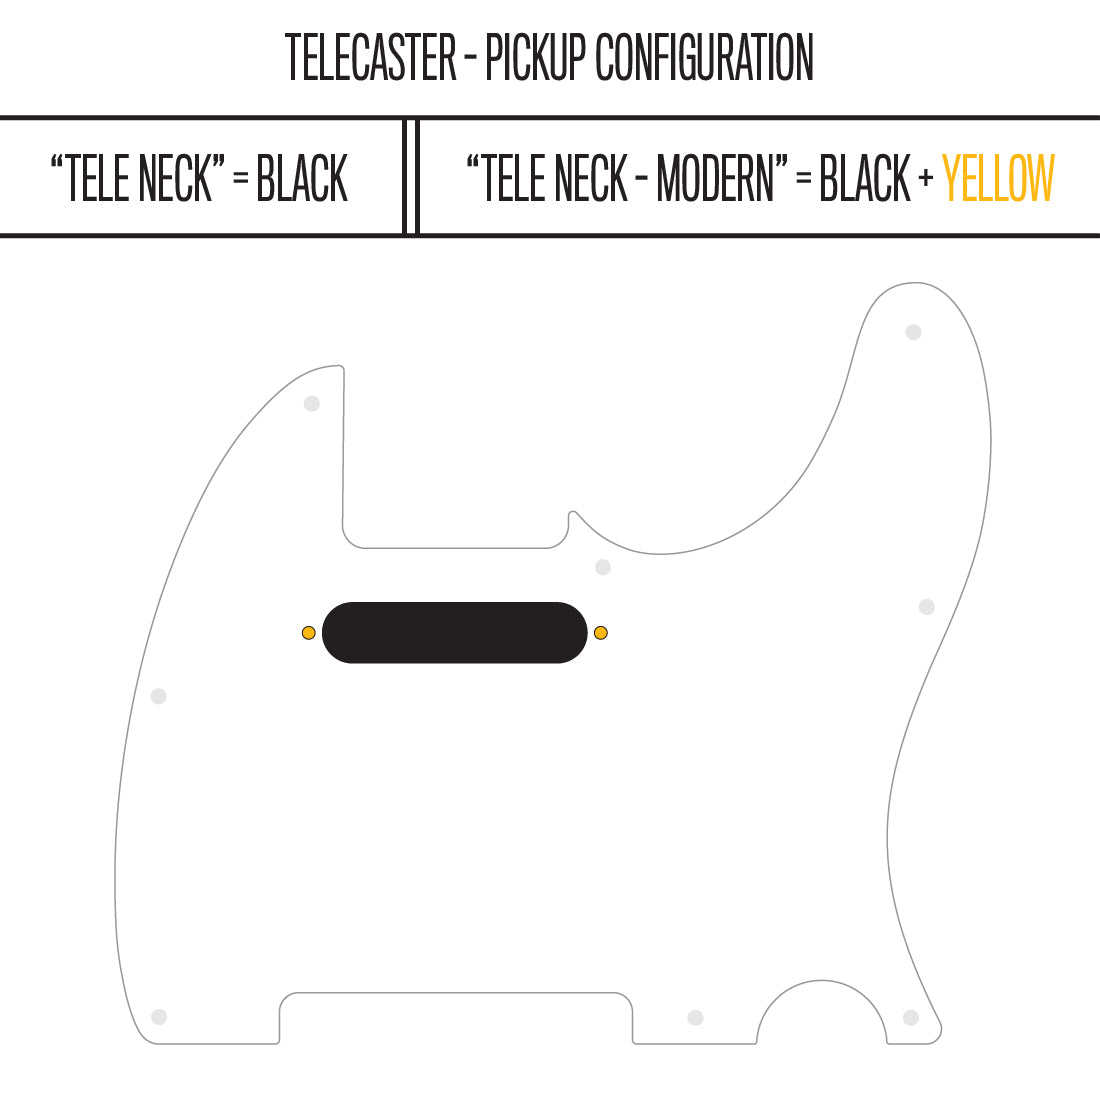 Three Stripes - Telecaster Pickguard - Black/White/Black